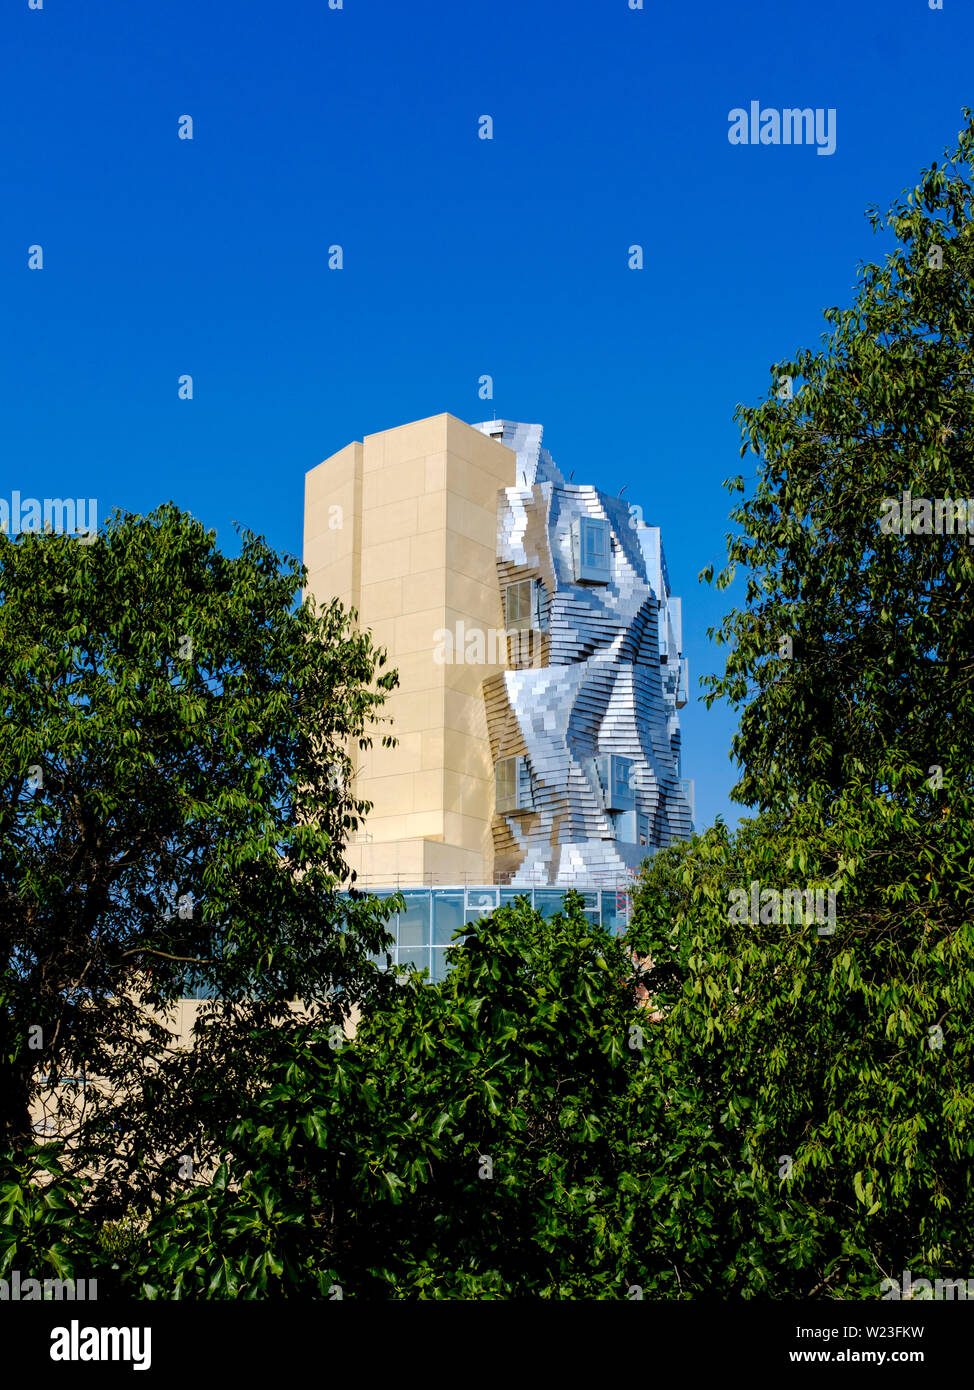 LUMA Arles edificio de Frank Gehry, junio de 2019 Fotografía de stock ...